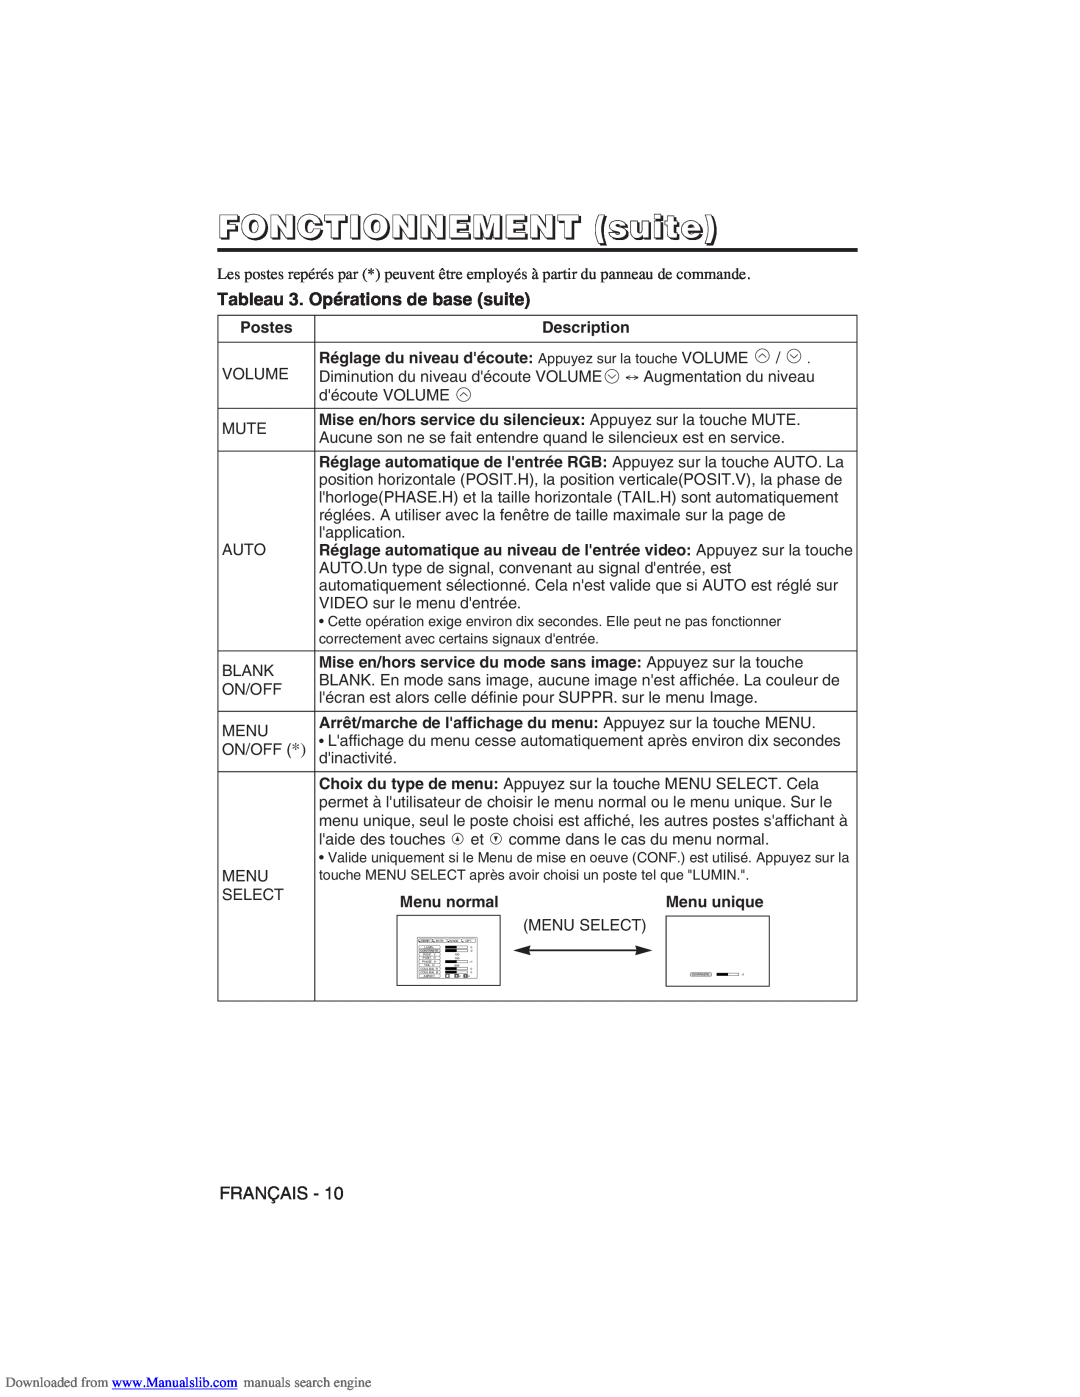 Hitachi CP-X275W user manual Tableau 3. Opérations de base suite, FONCTIONNEMENT suite 